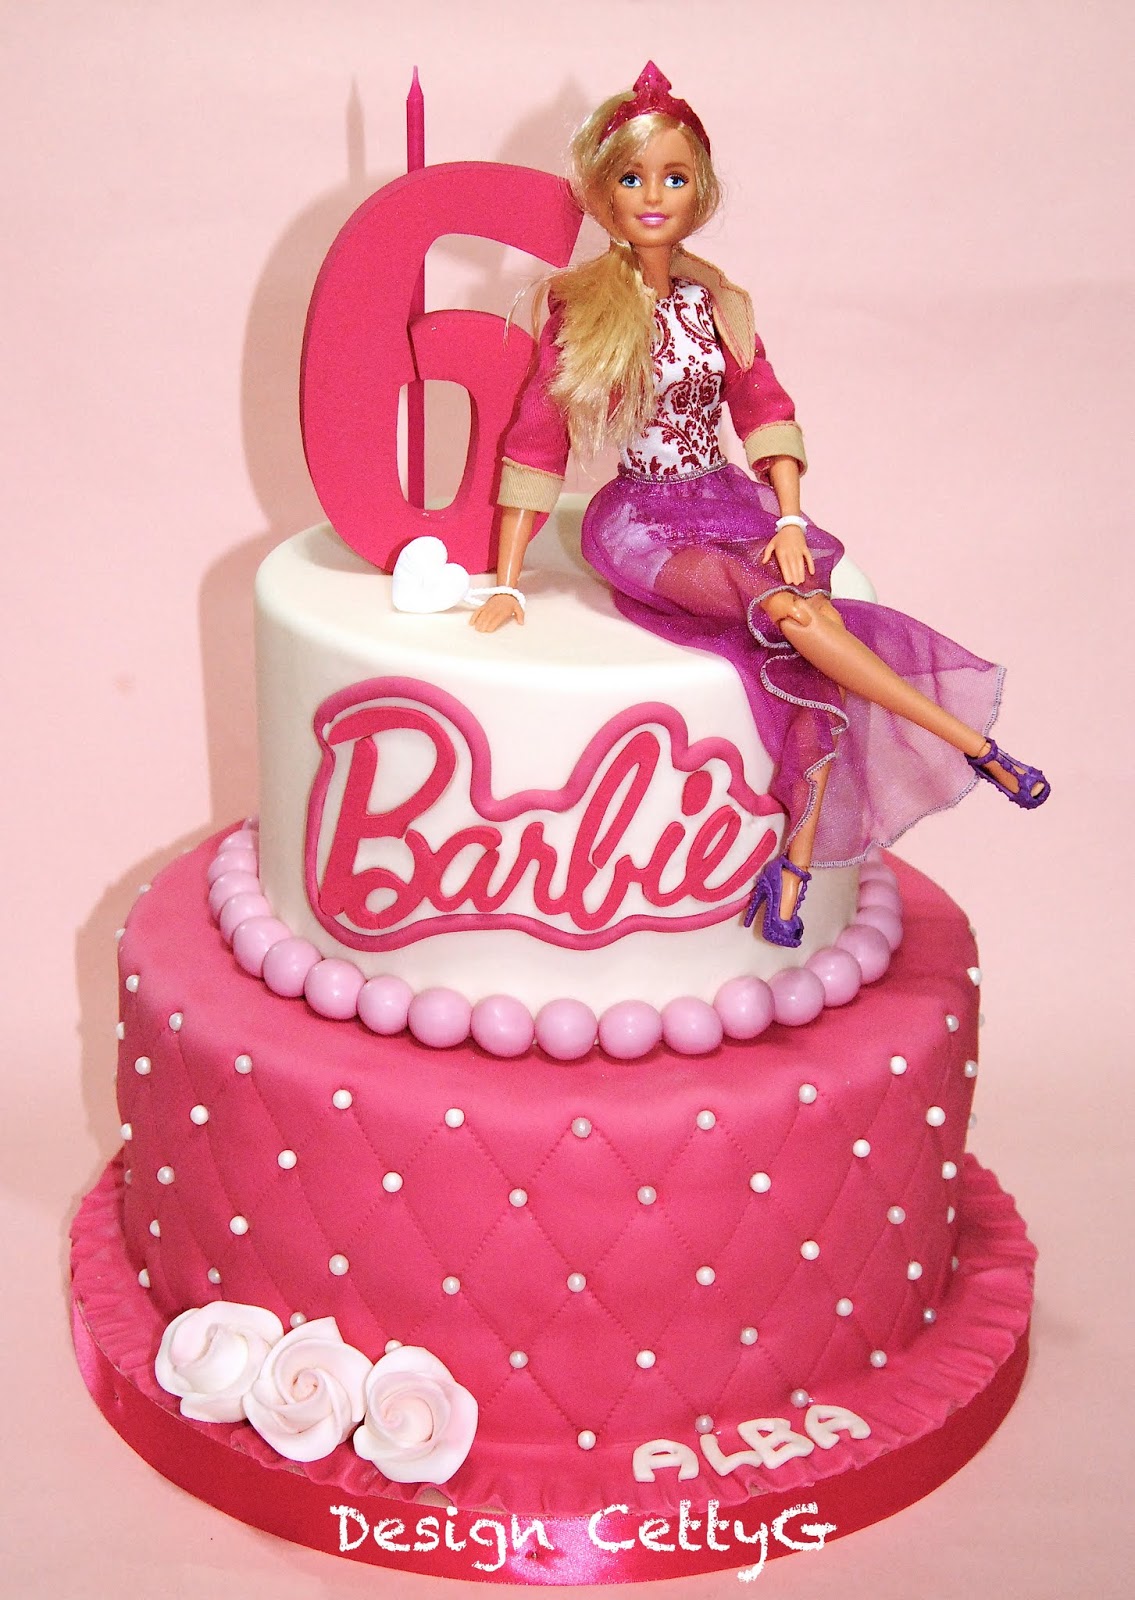 Addobbo tema Barbie compleanno - Creazioni Arte e Decori